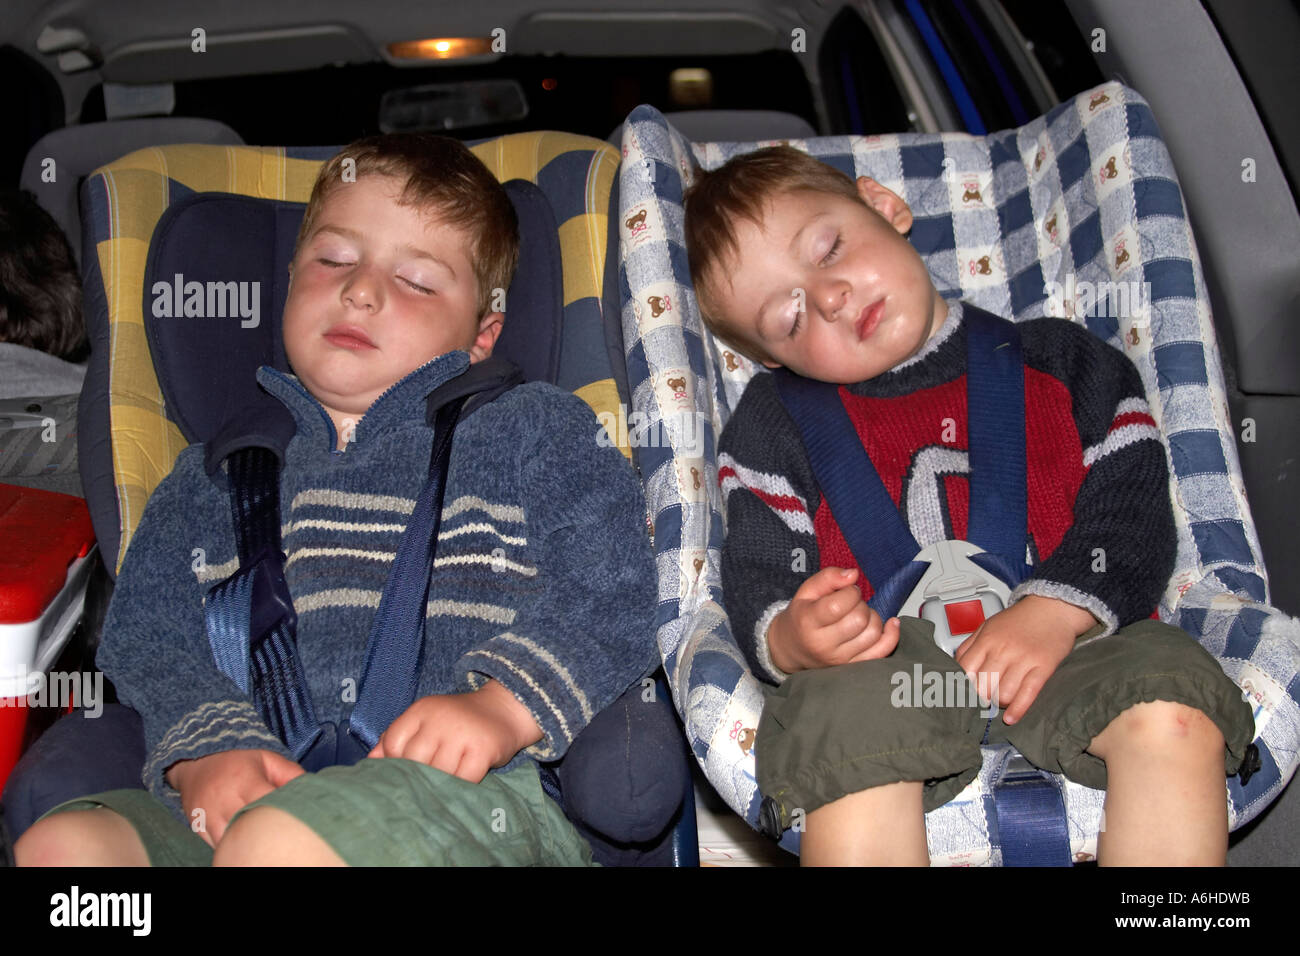 Zwei Brüder, Die Im Auto Schlafen Stockbild - Bild von bequem